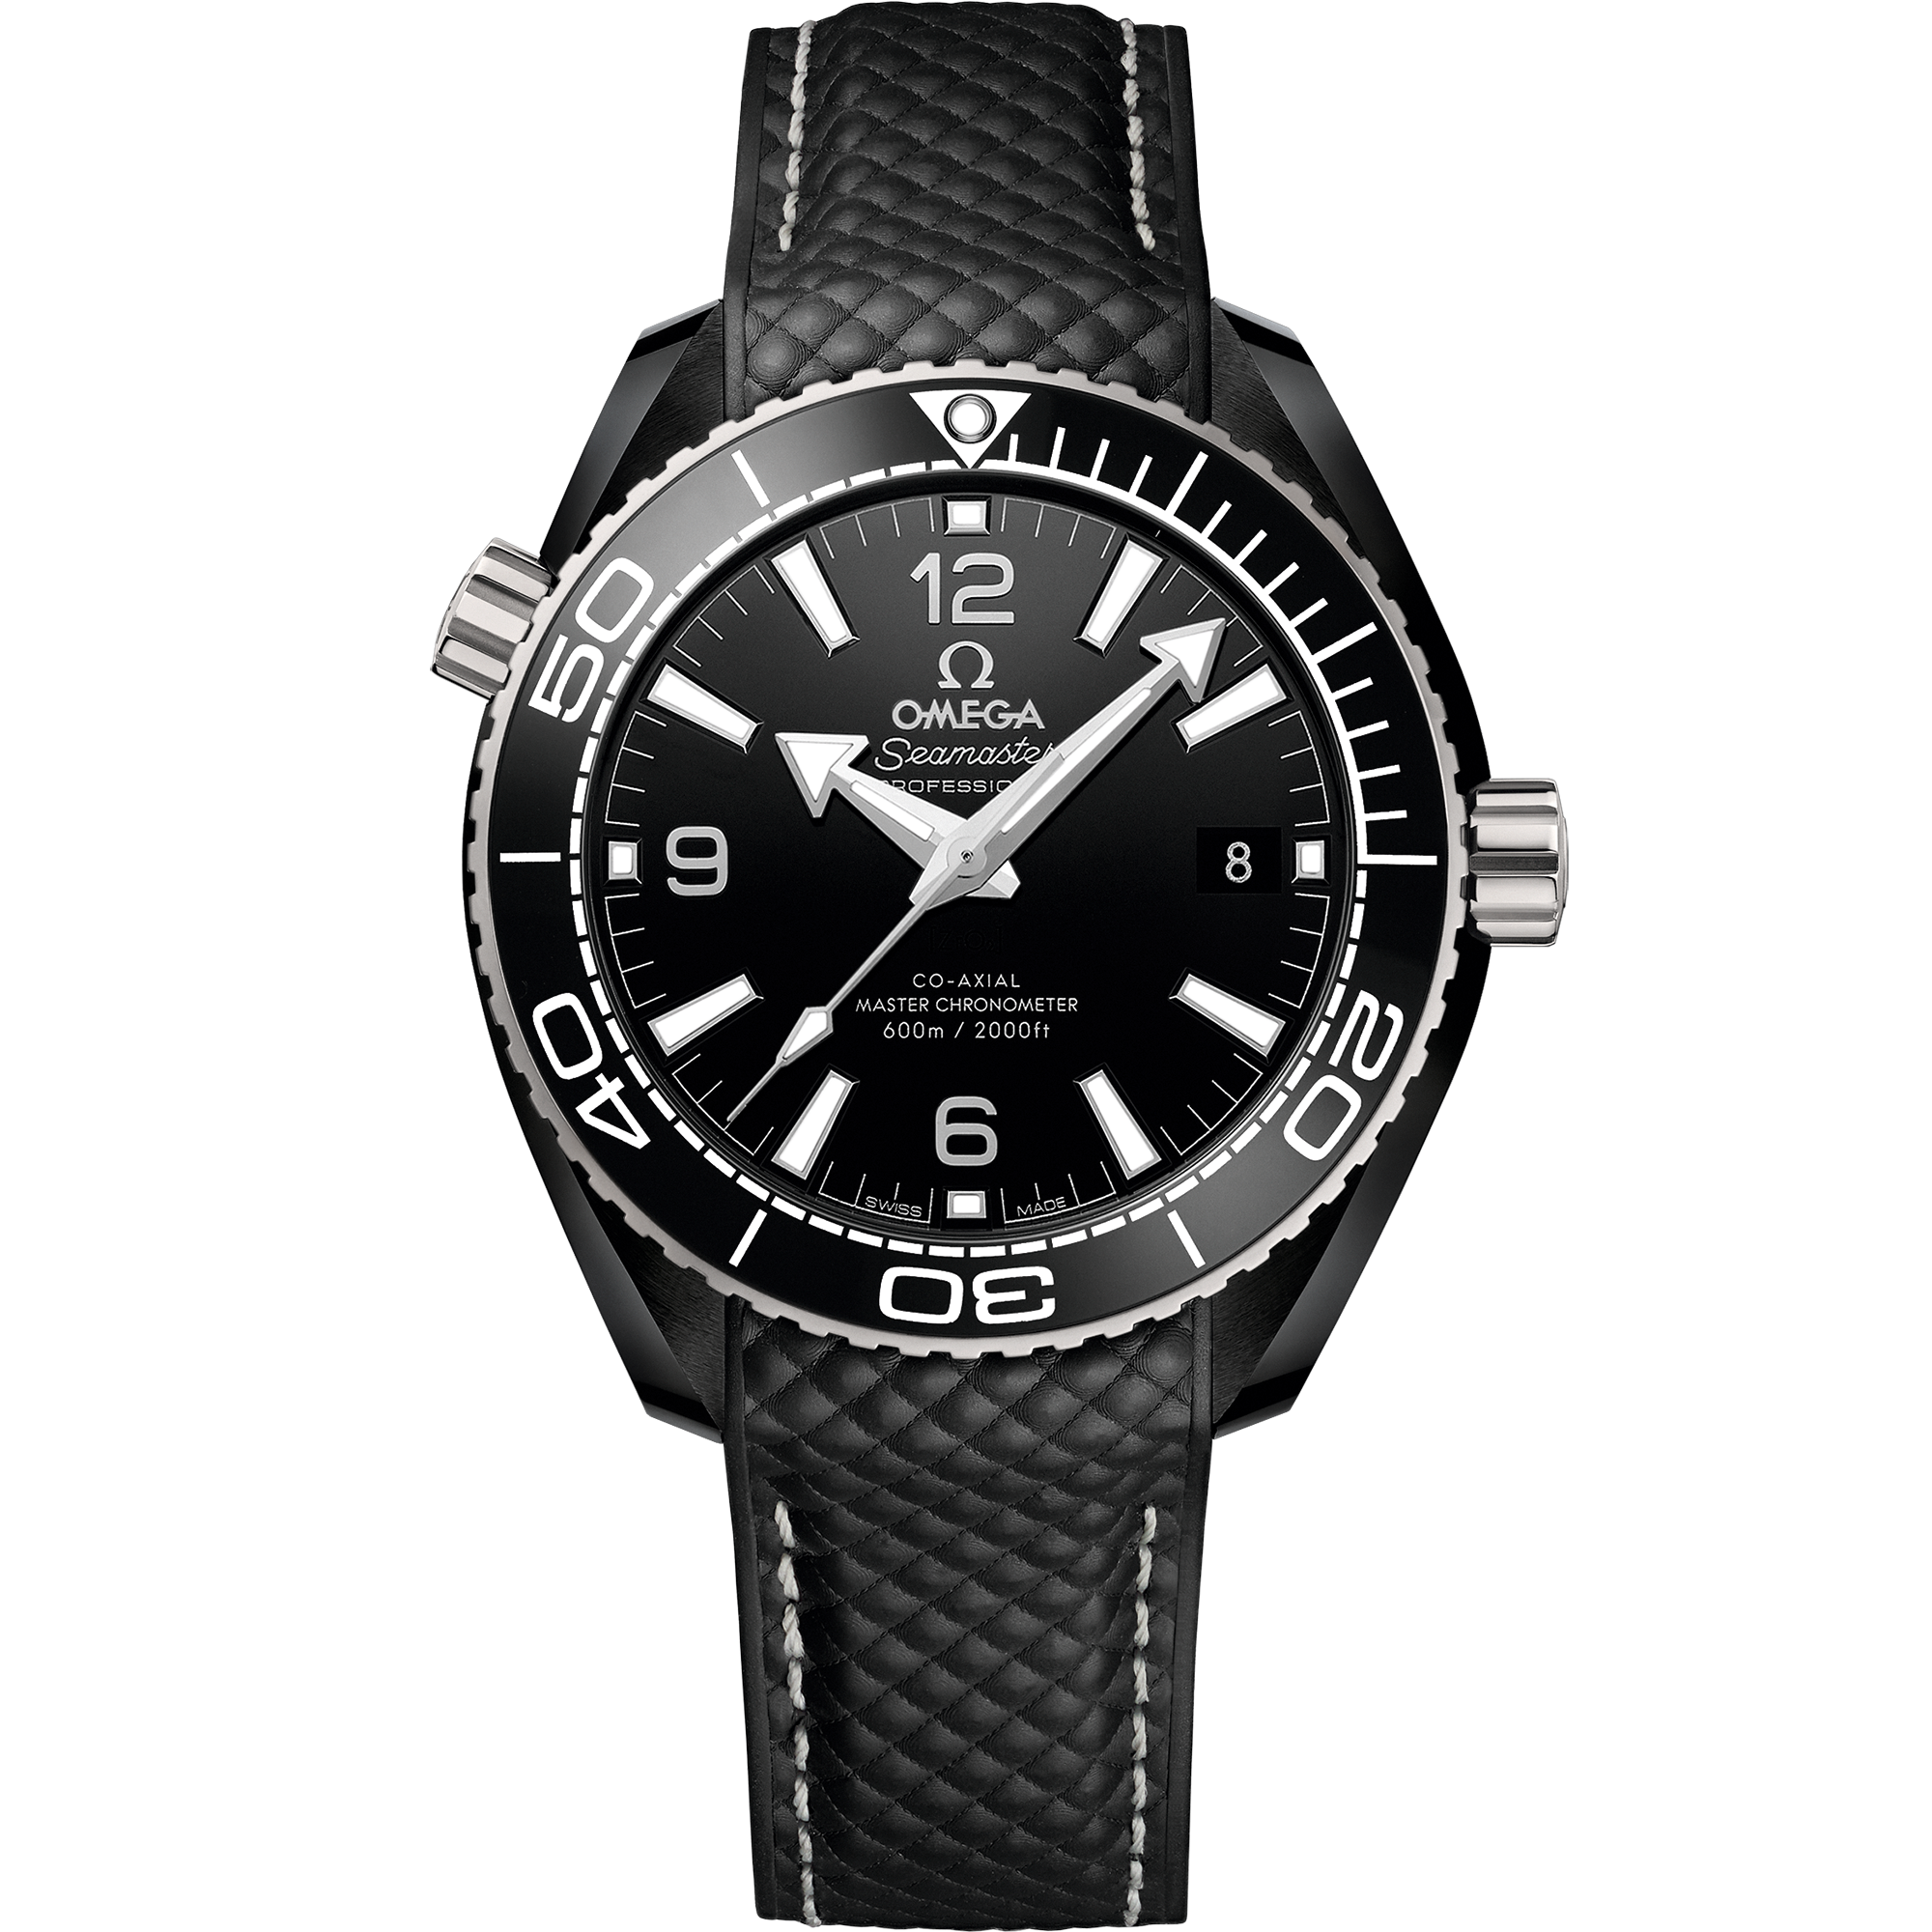 Seamaster 39.5 มม., เซรามิกสีดำ บน สายนาฬิกายาง - 215.92.40.20.01.001